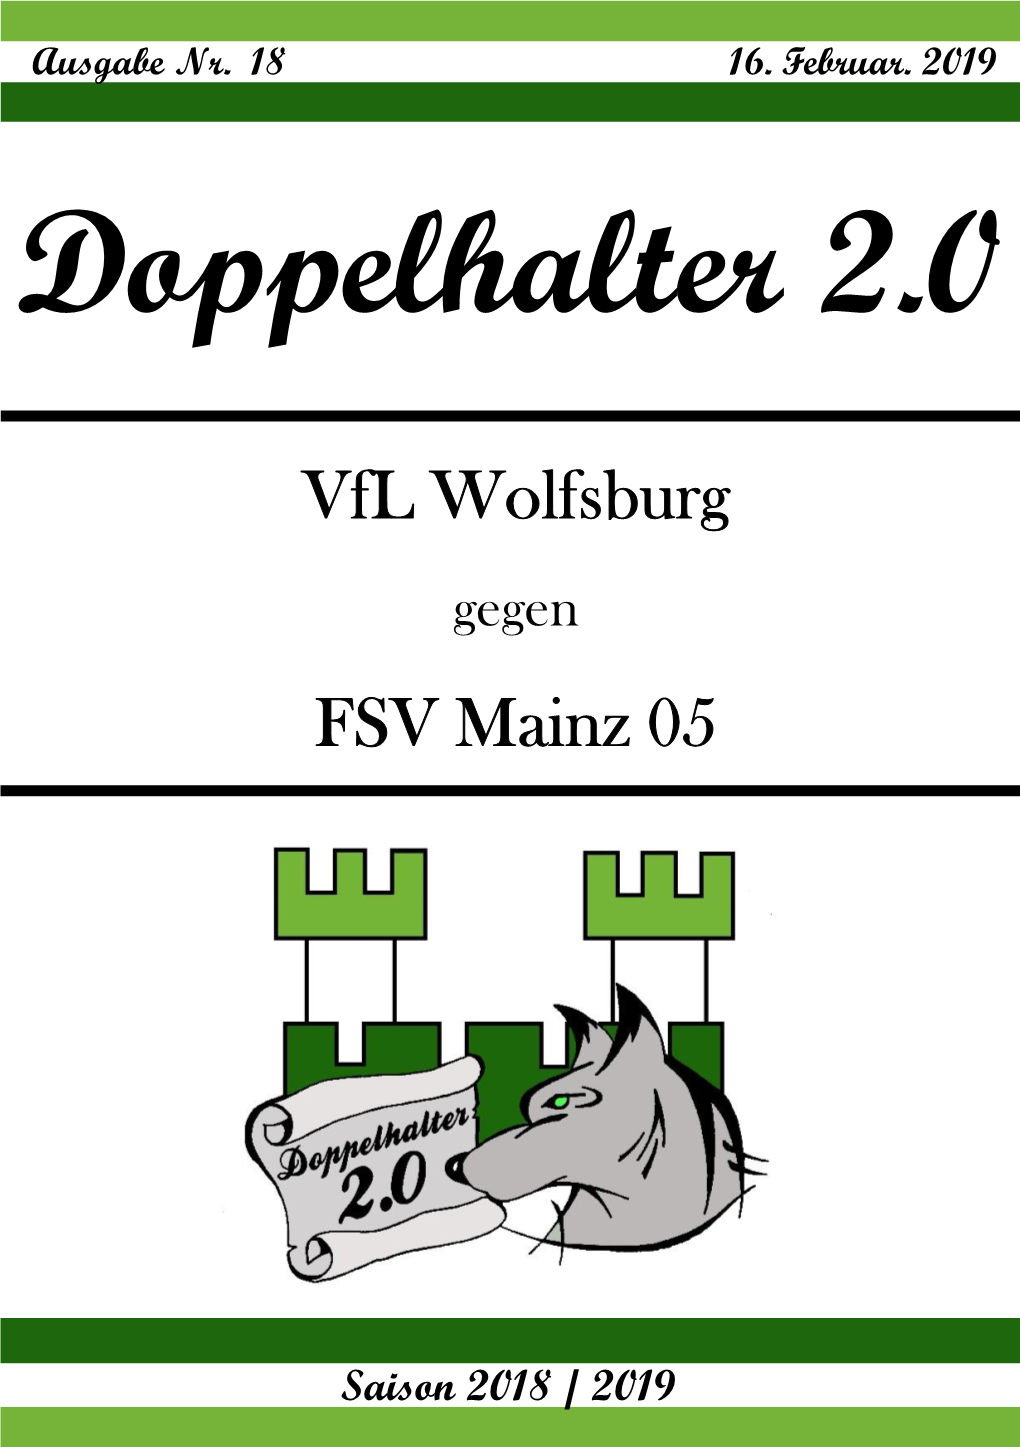 16.02.2019 – (18) Vfl Gegen FSV Mainz 05